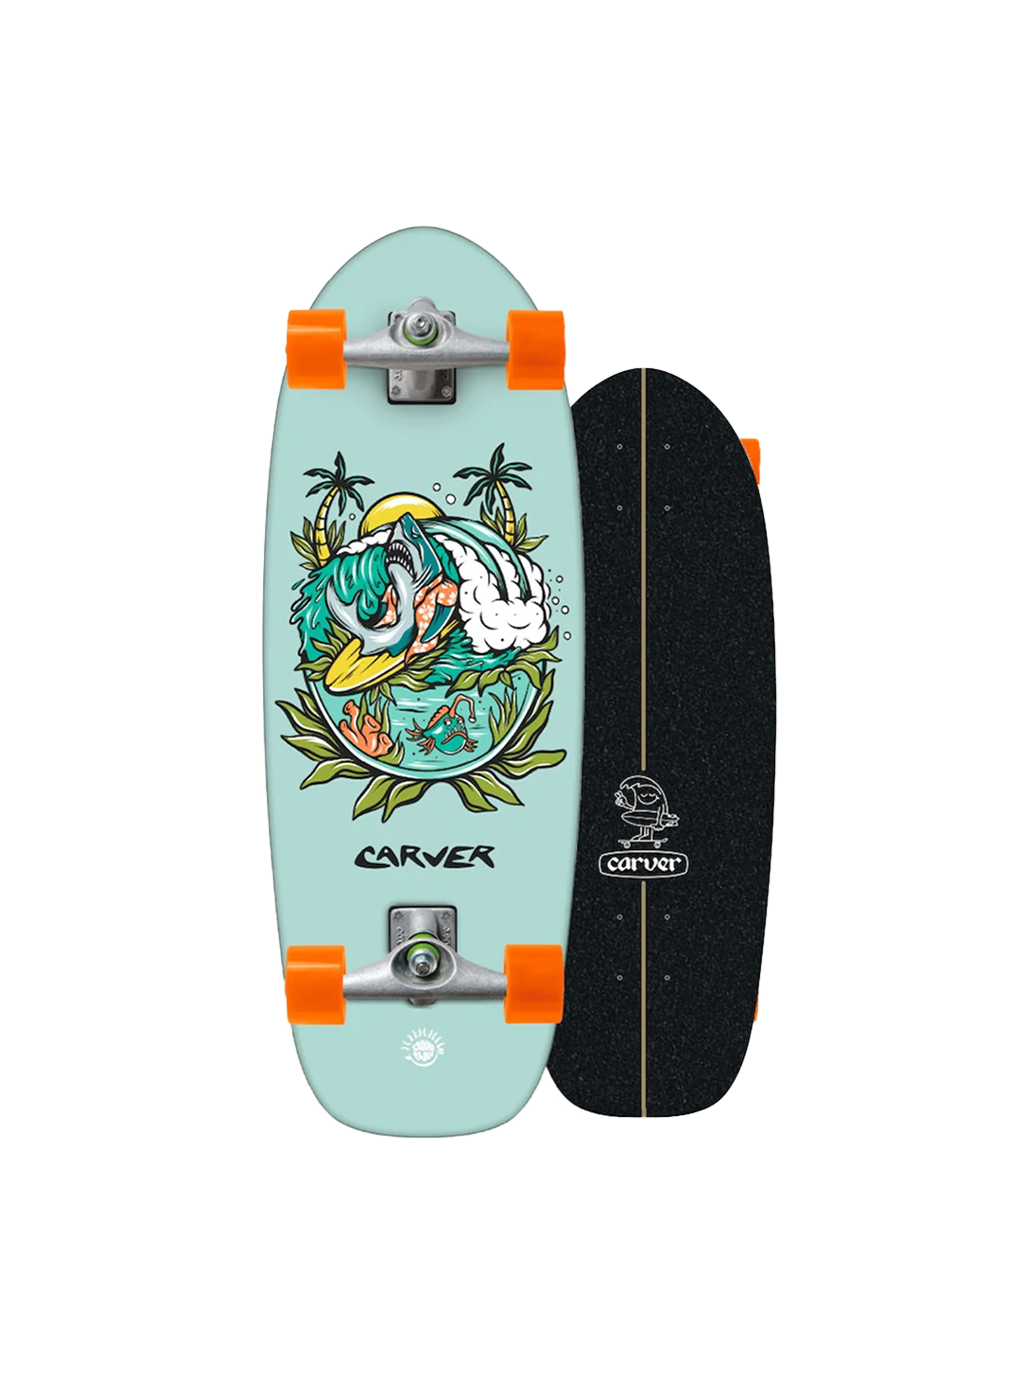 Surfskate board for kids Carver MINI